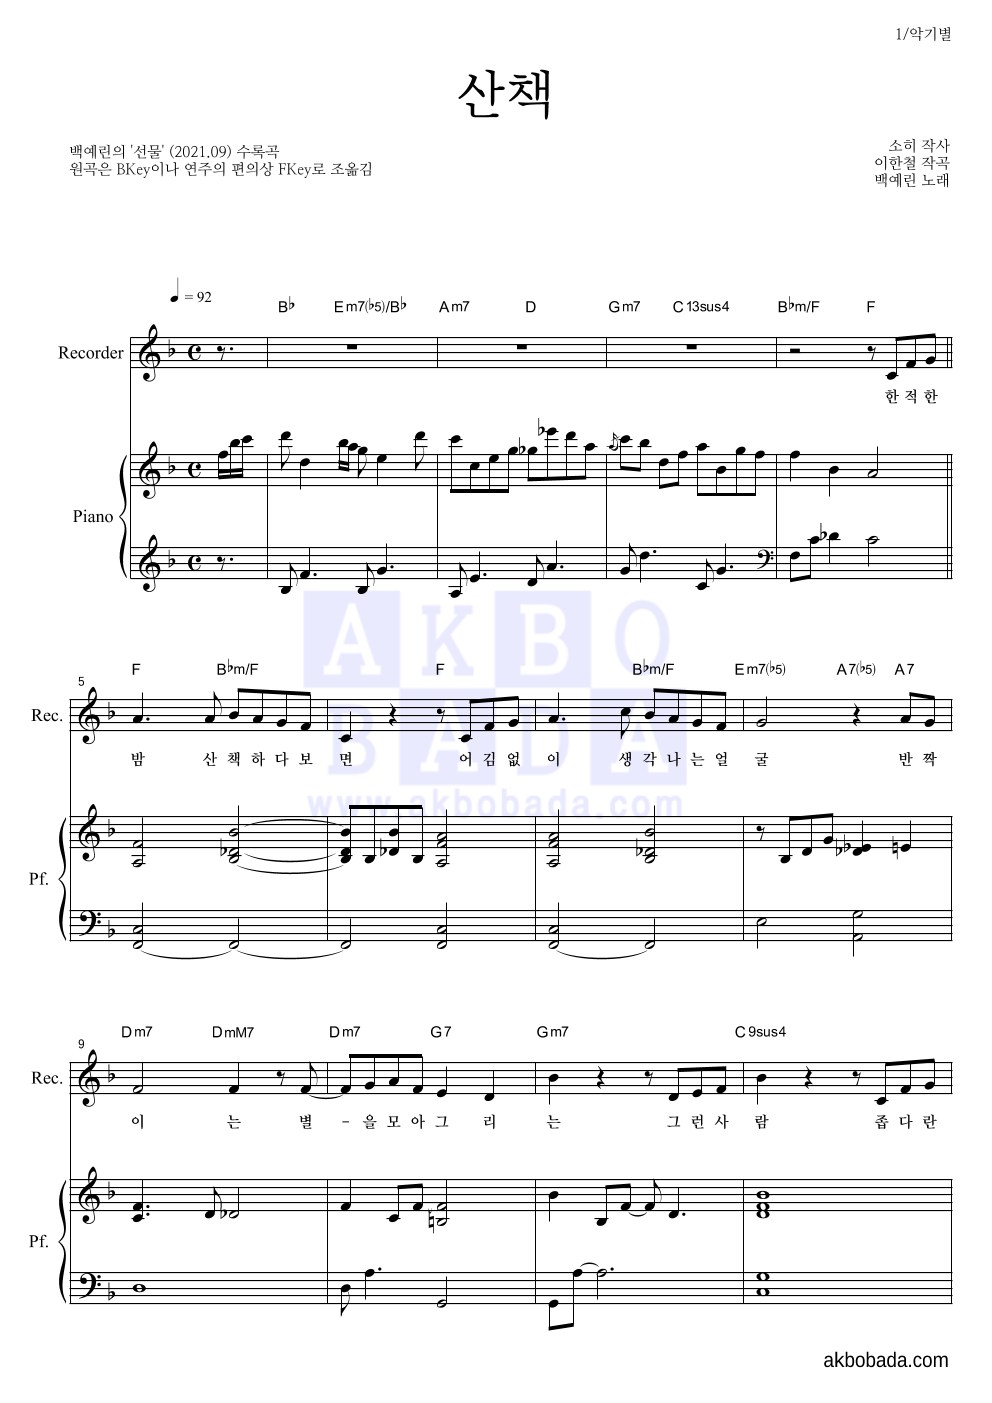 백예린 - 산책 리코더&피아노 악보 